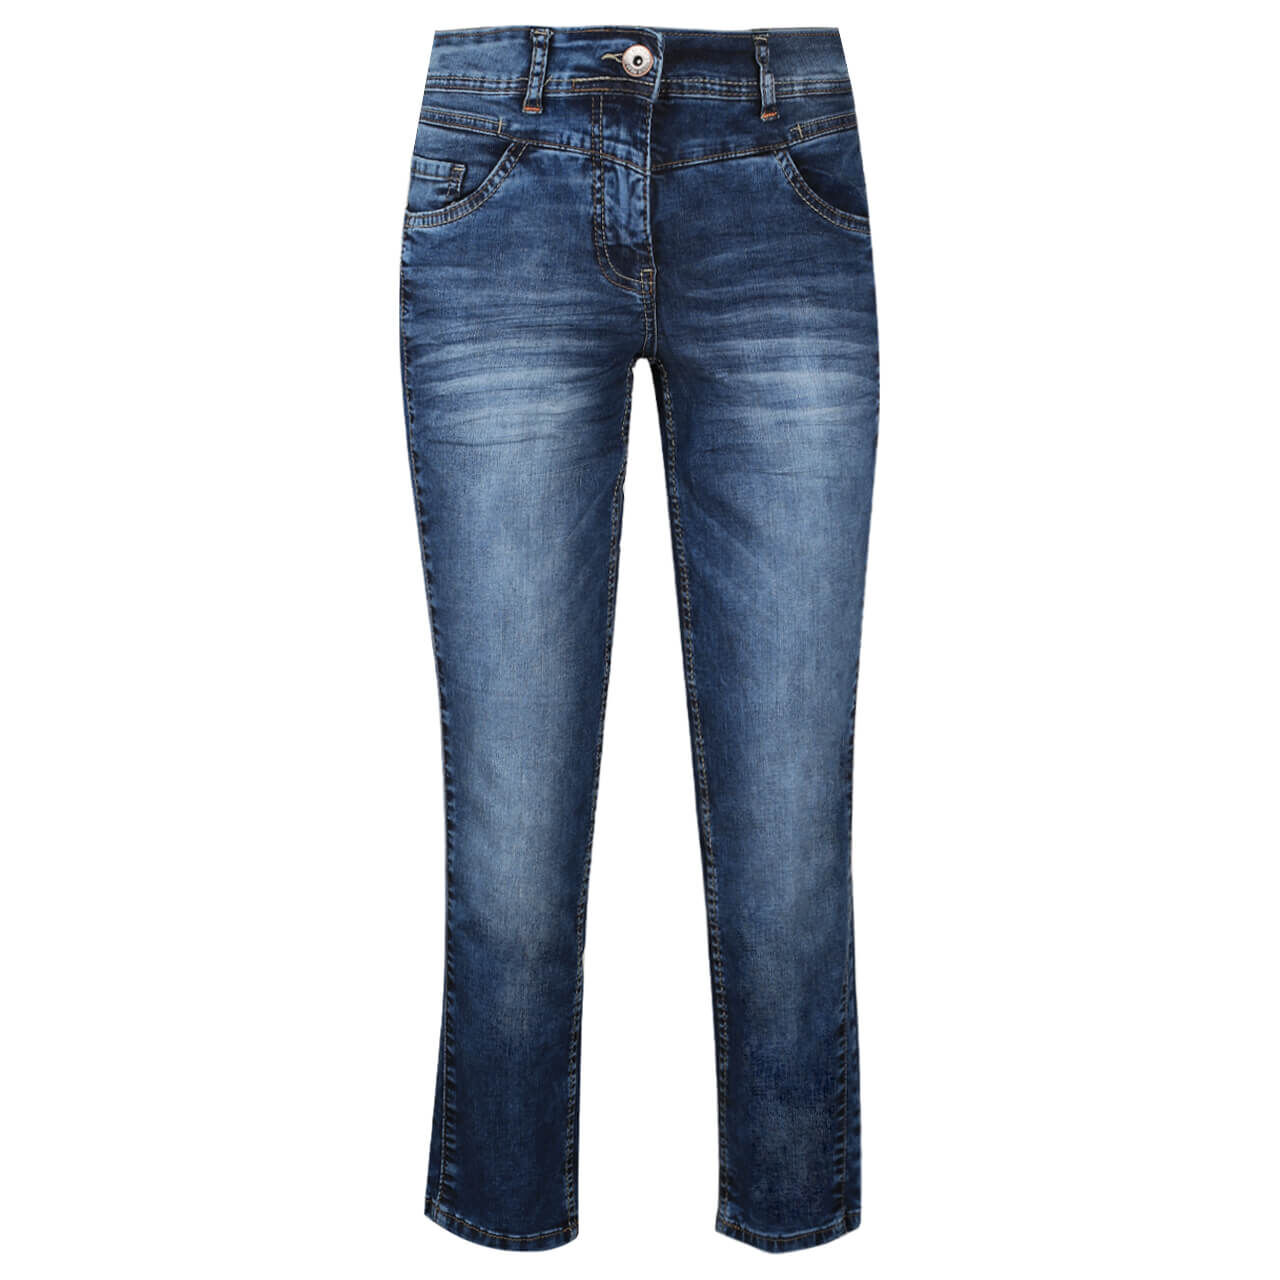 Die Zusammenfassung der besten Cecil scarlett jeans